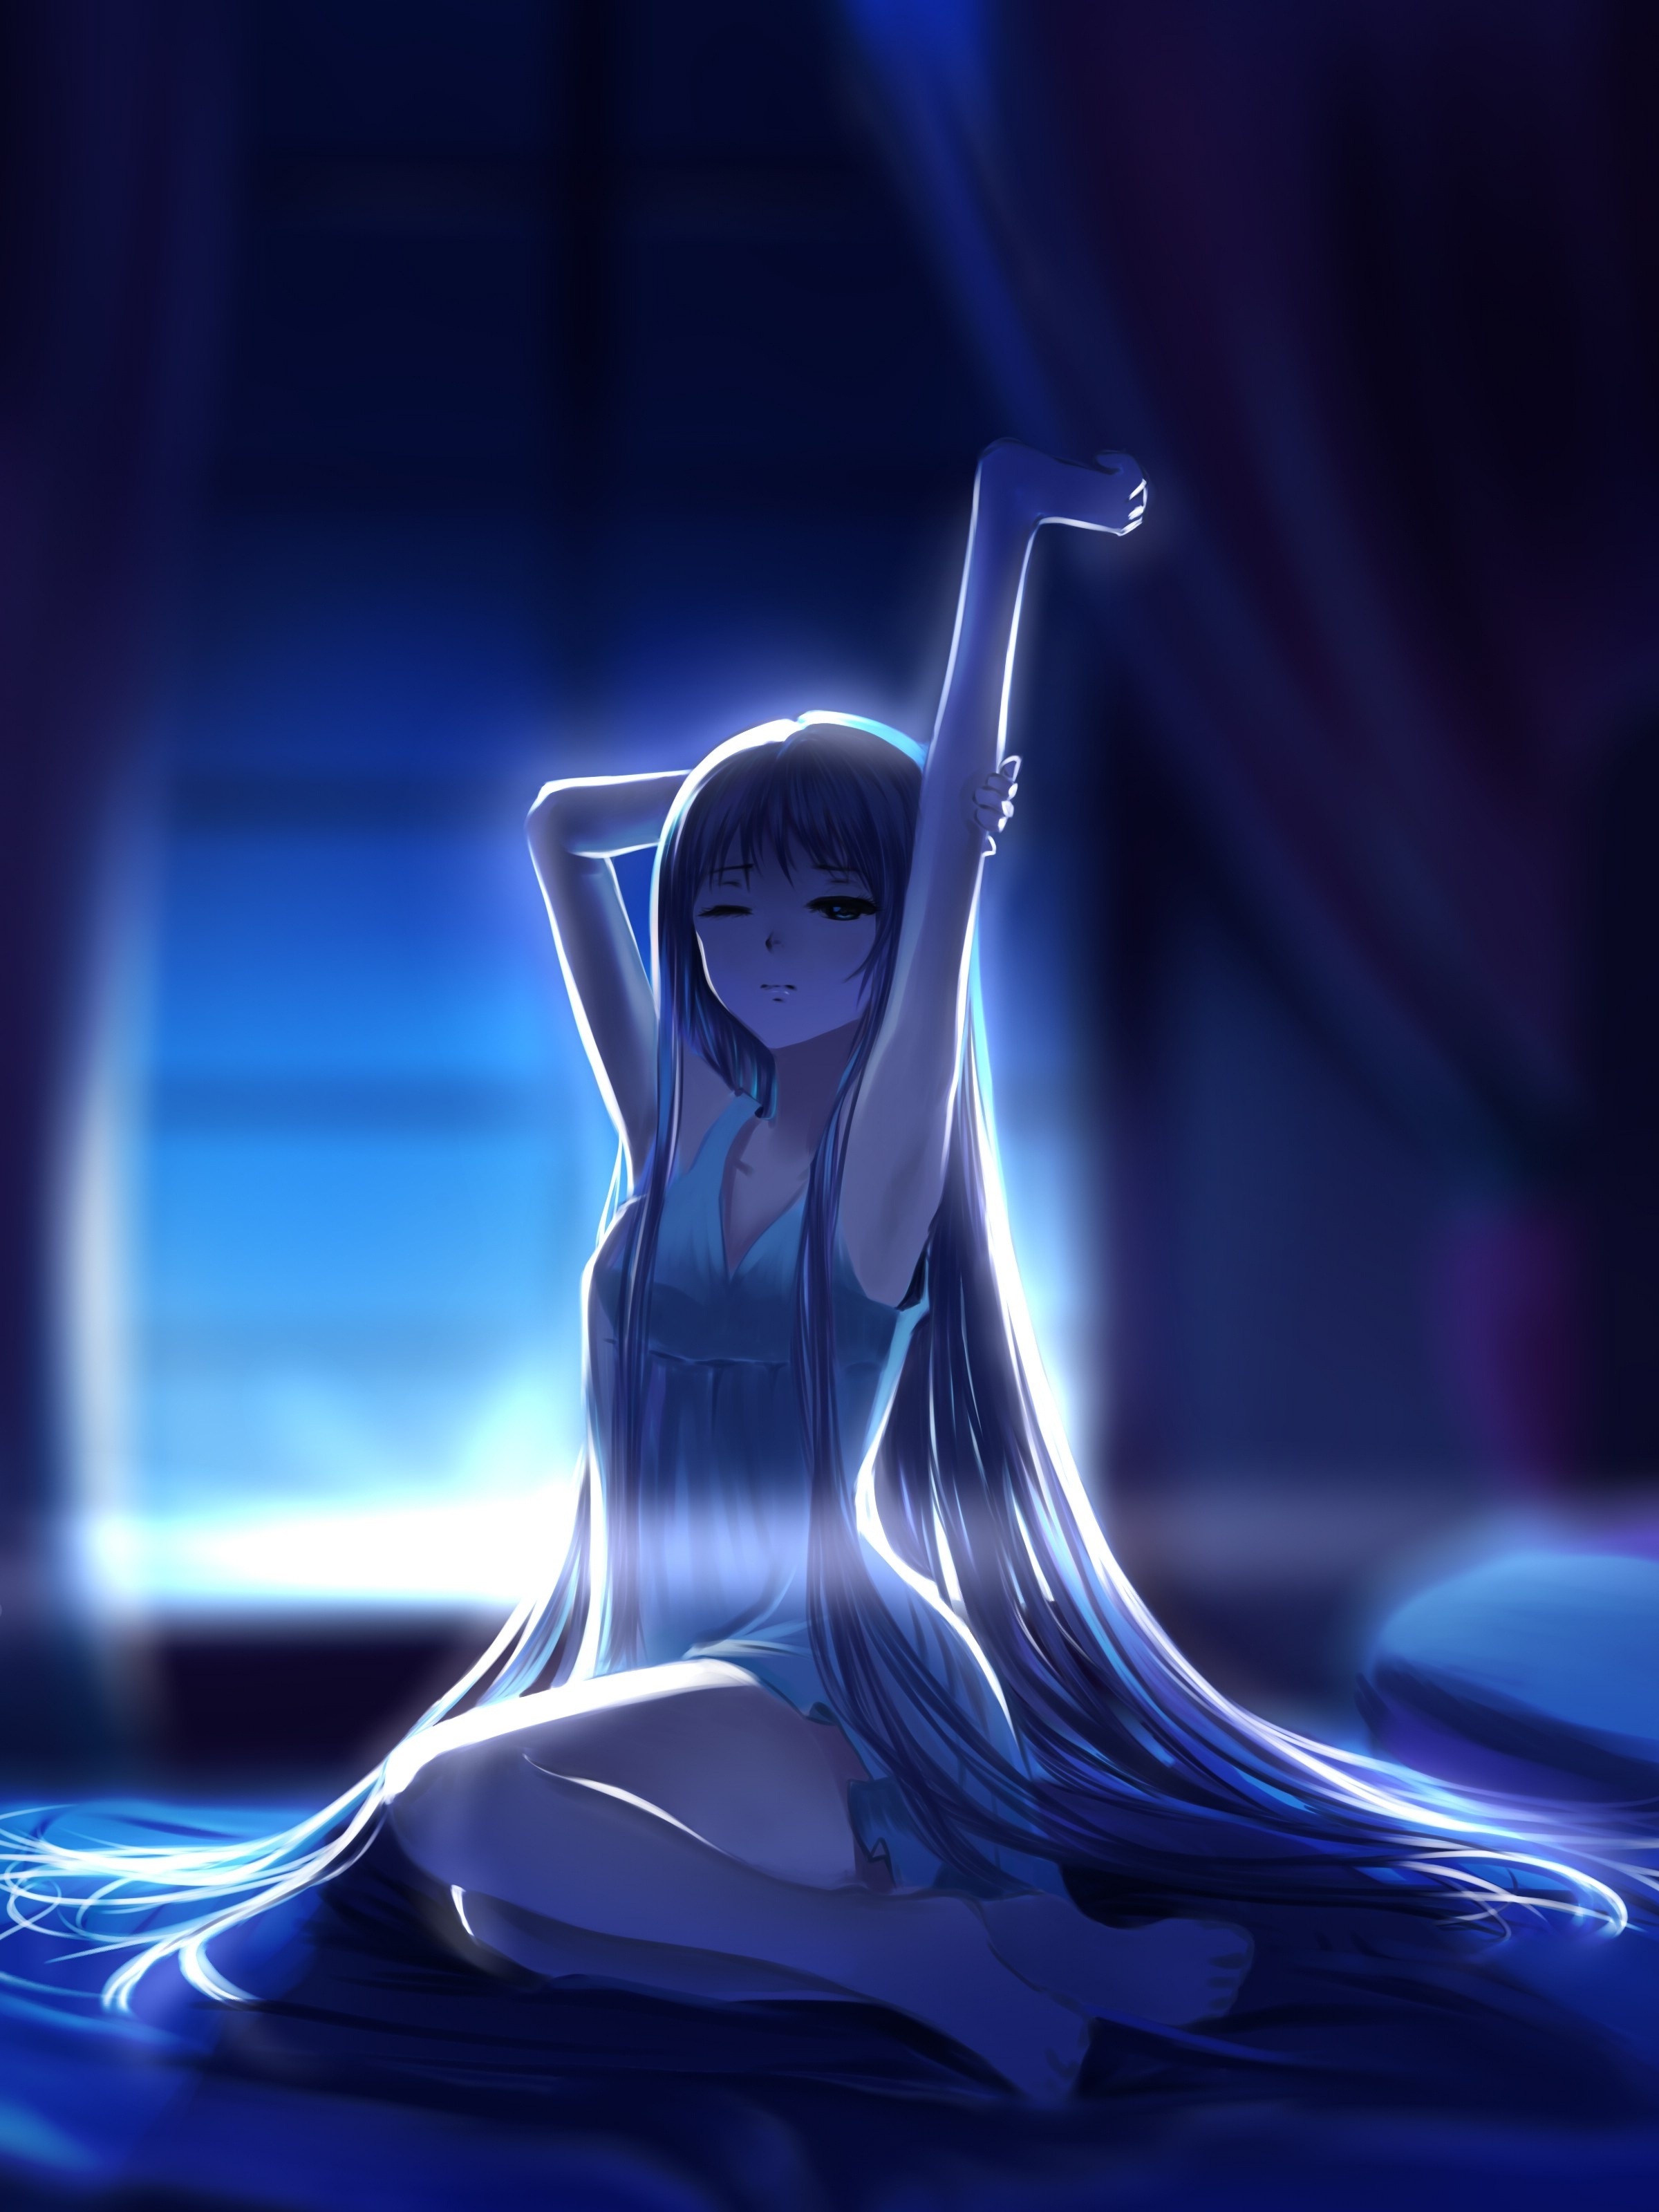 Wallpaper Light Dress Sleepy Anime Girl Resolution